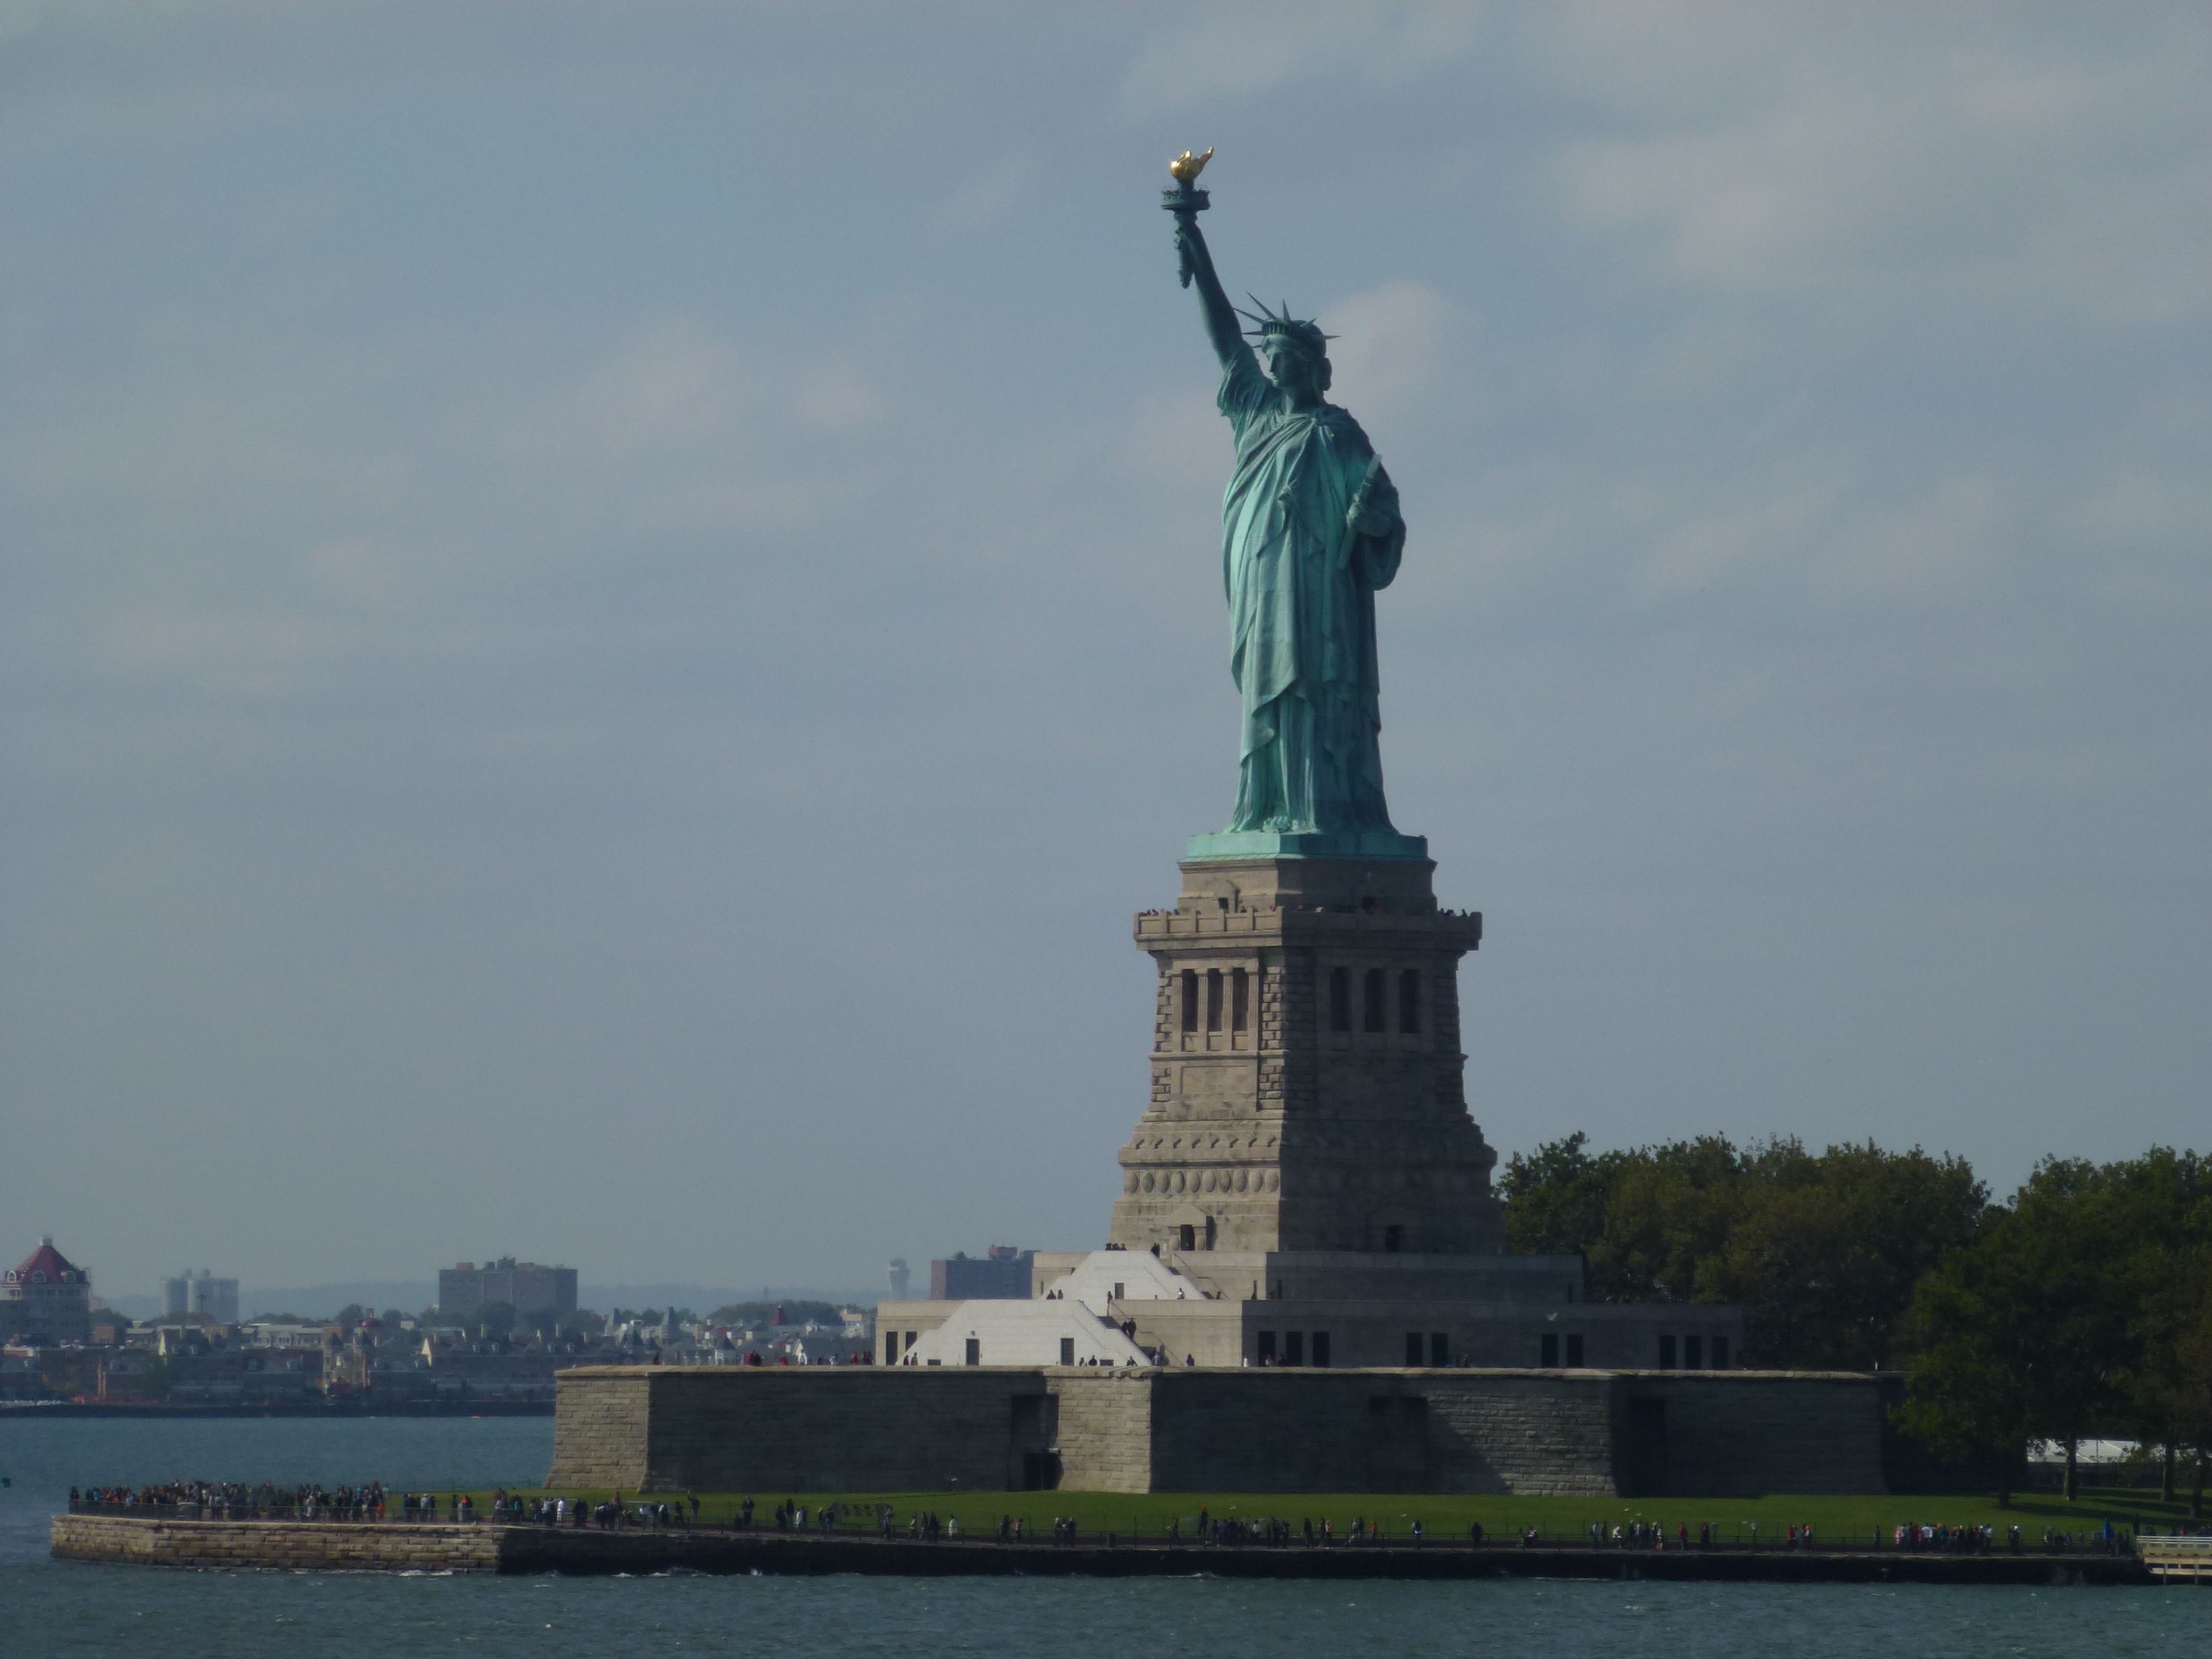 Fotografía de la Estatua de la libertad desde el ferry por Miriam Blanco